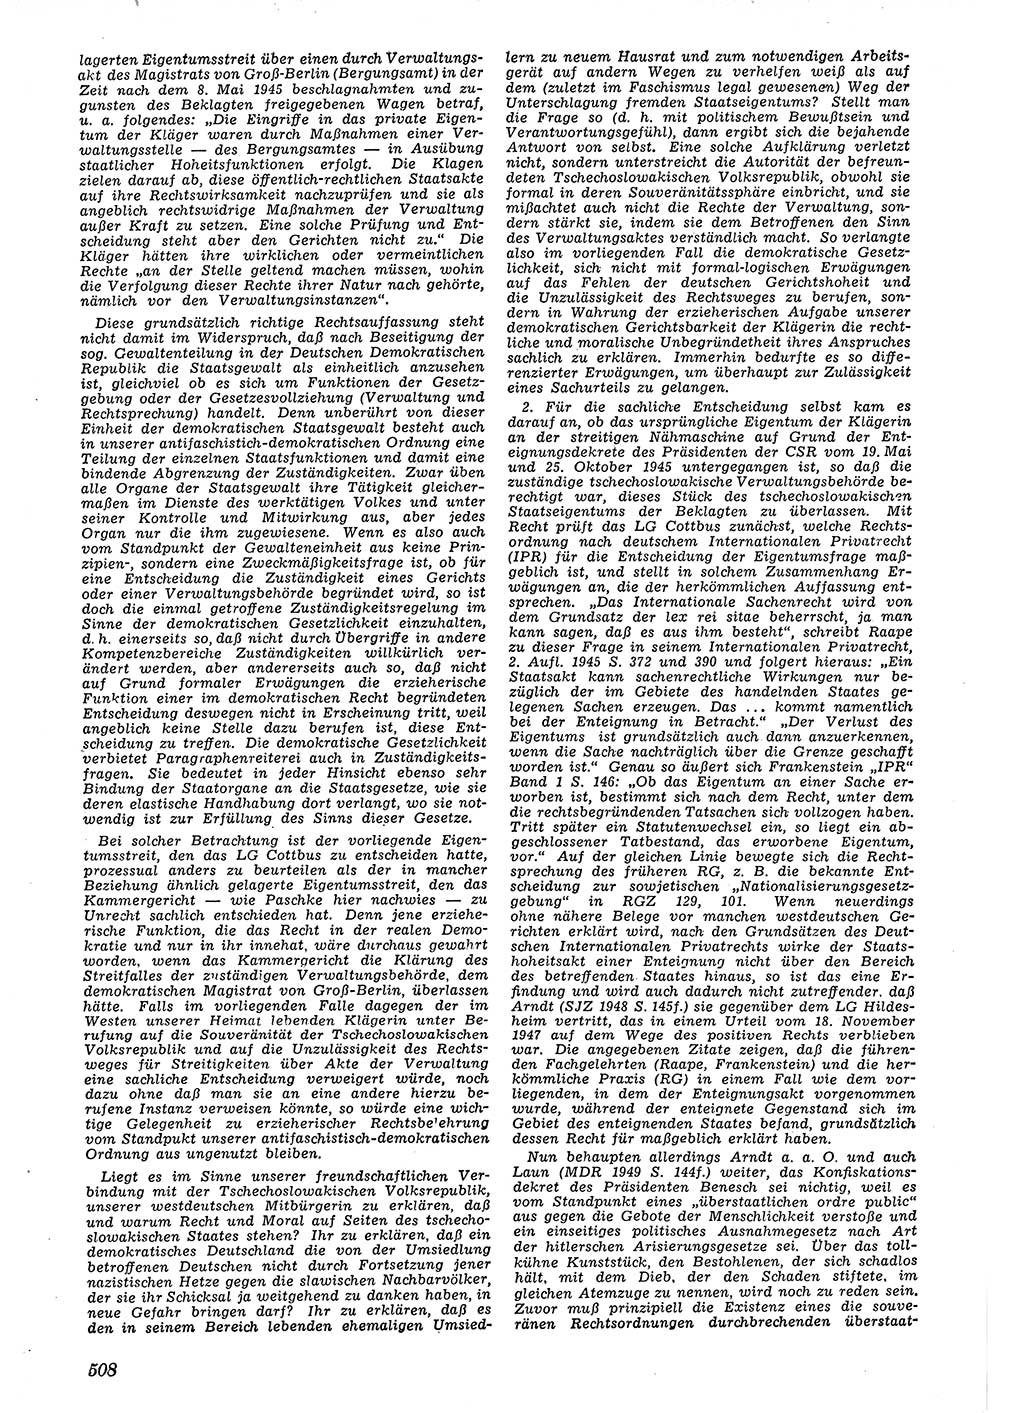 Neue Justiz (NJ), Zeitschrift für Recht und Rechtswissenschaft [Deutsche Demokratische Republik (DDR)], 4. Jahrgang 1950, Seite 508 (NJ DDR 1950, S. 508)